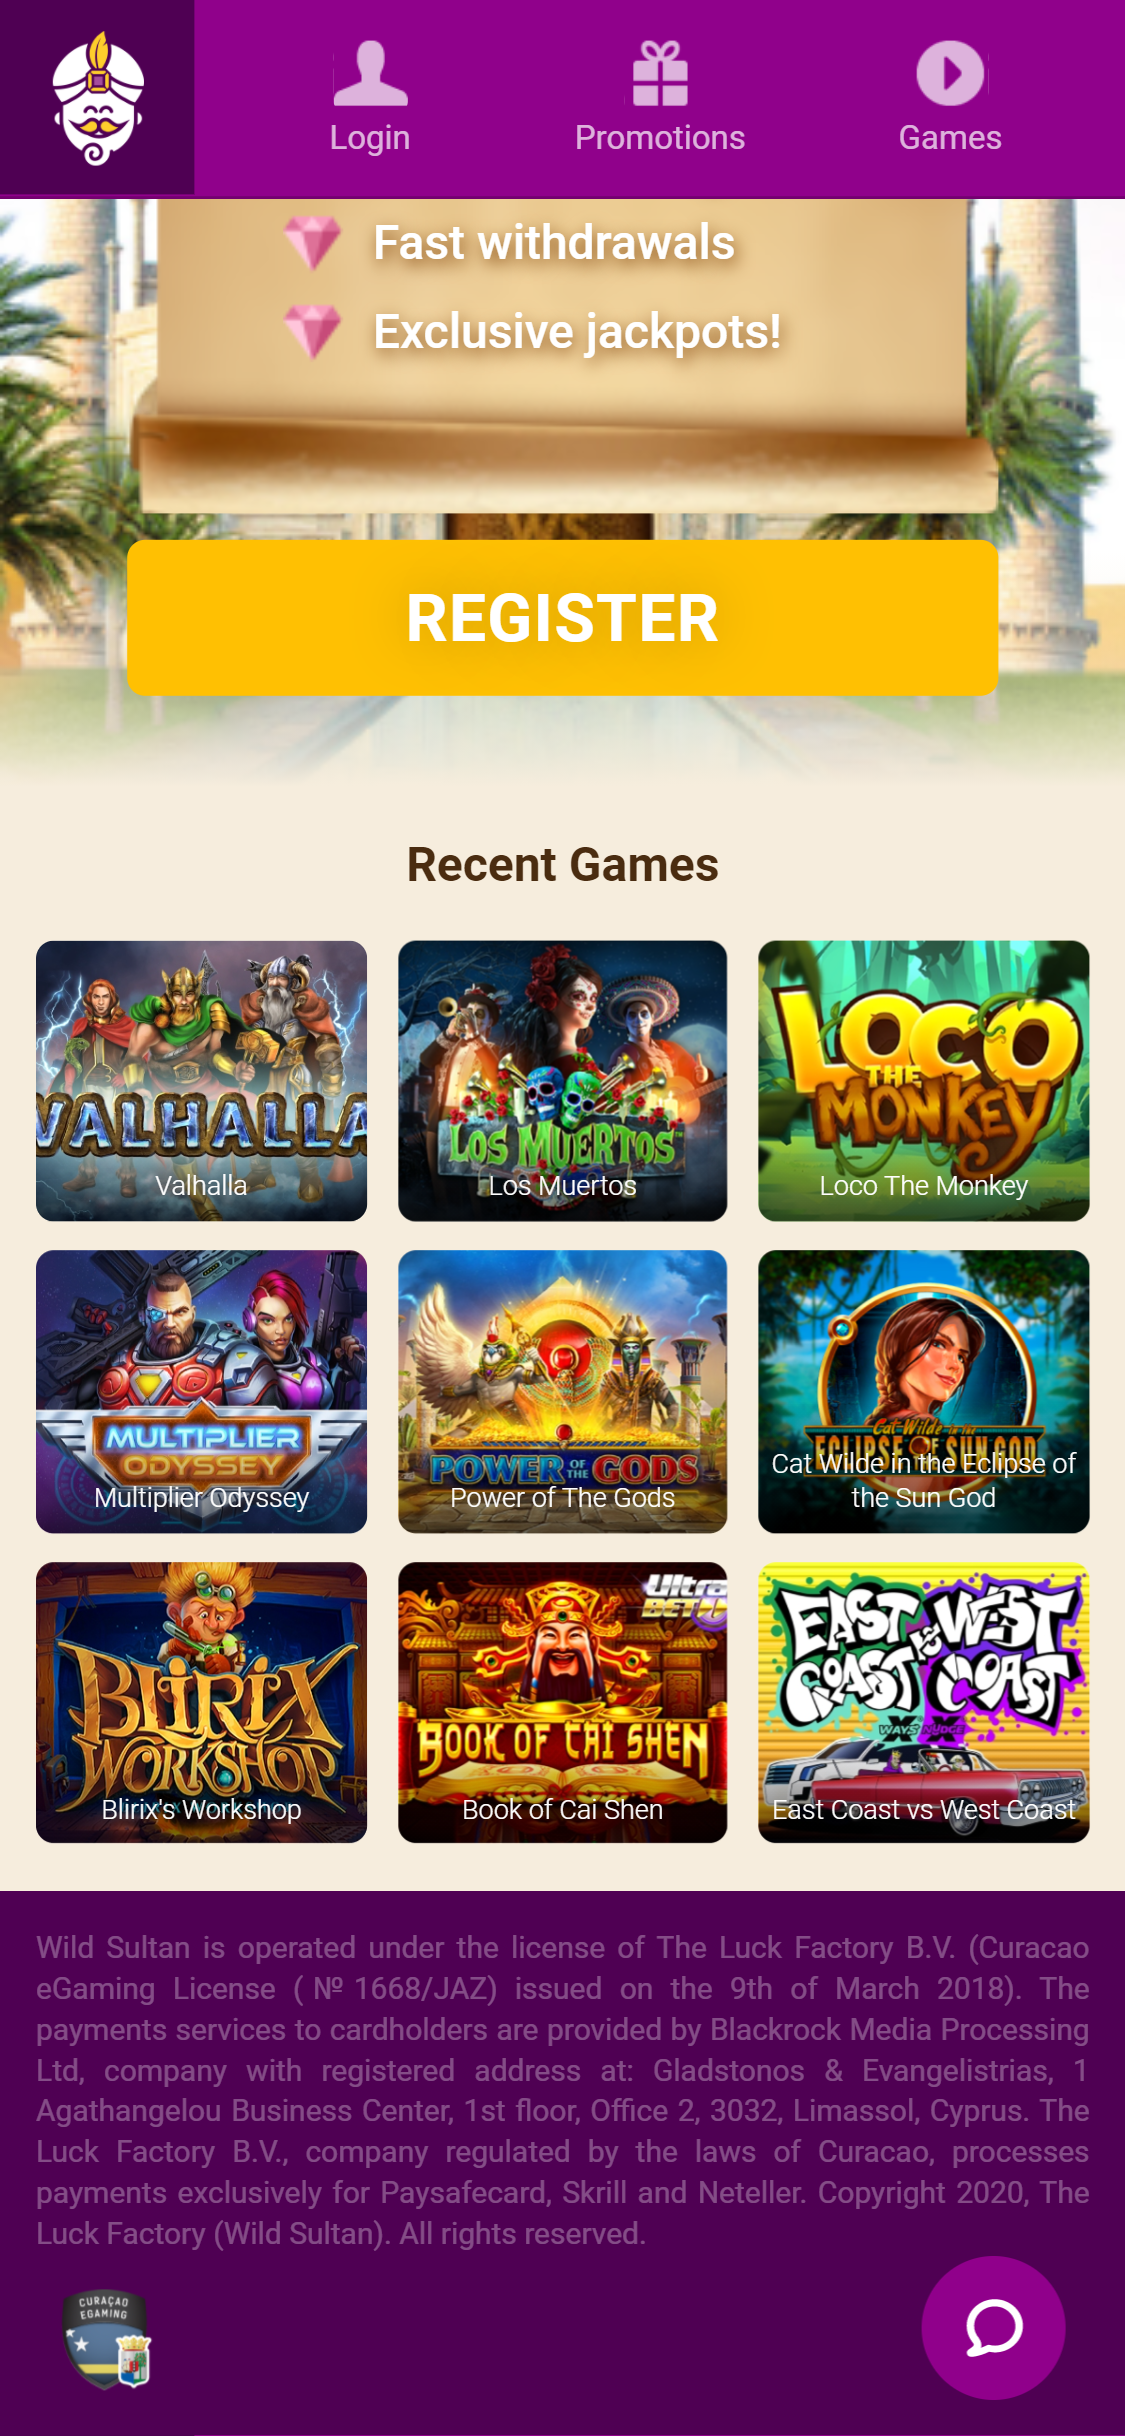 Wild Sultan Casino Mobile Games Review